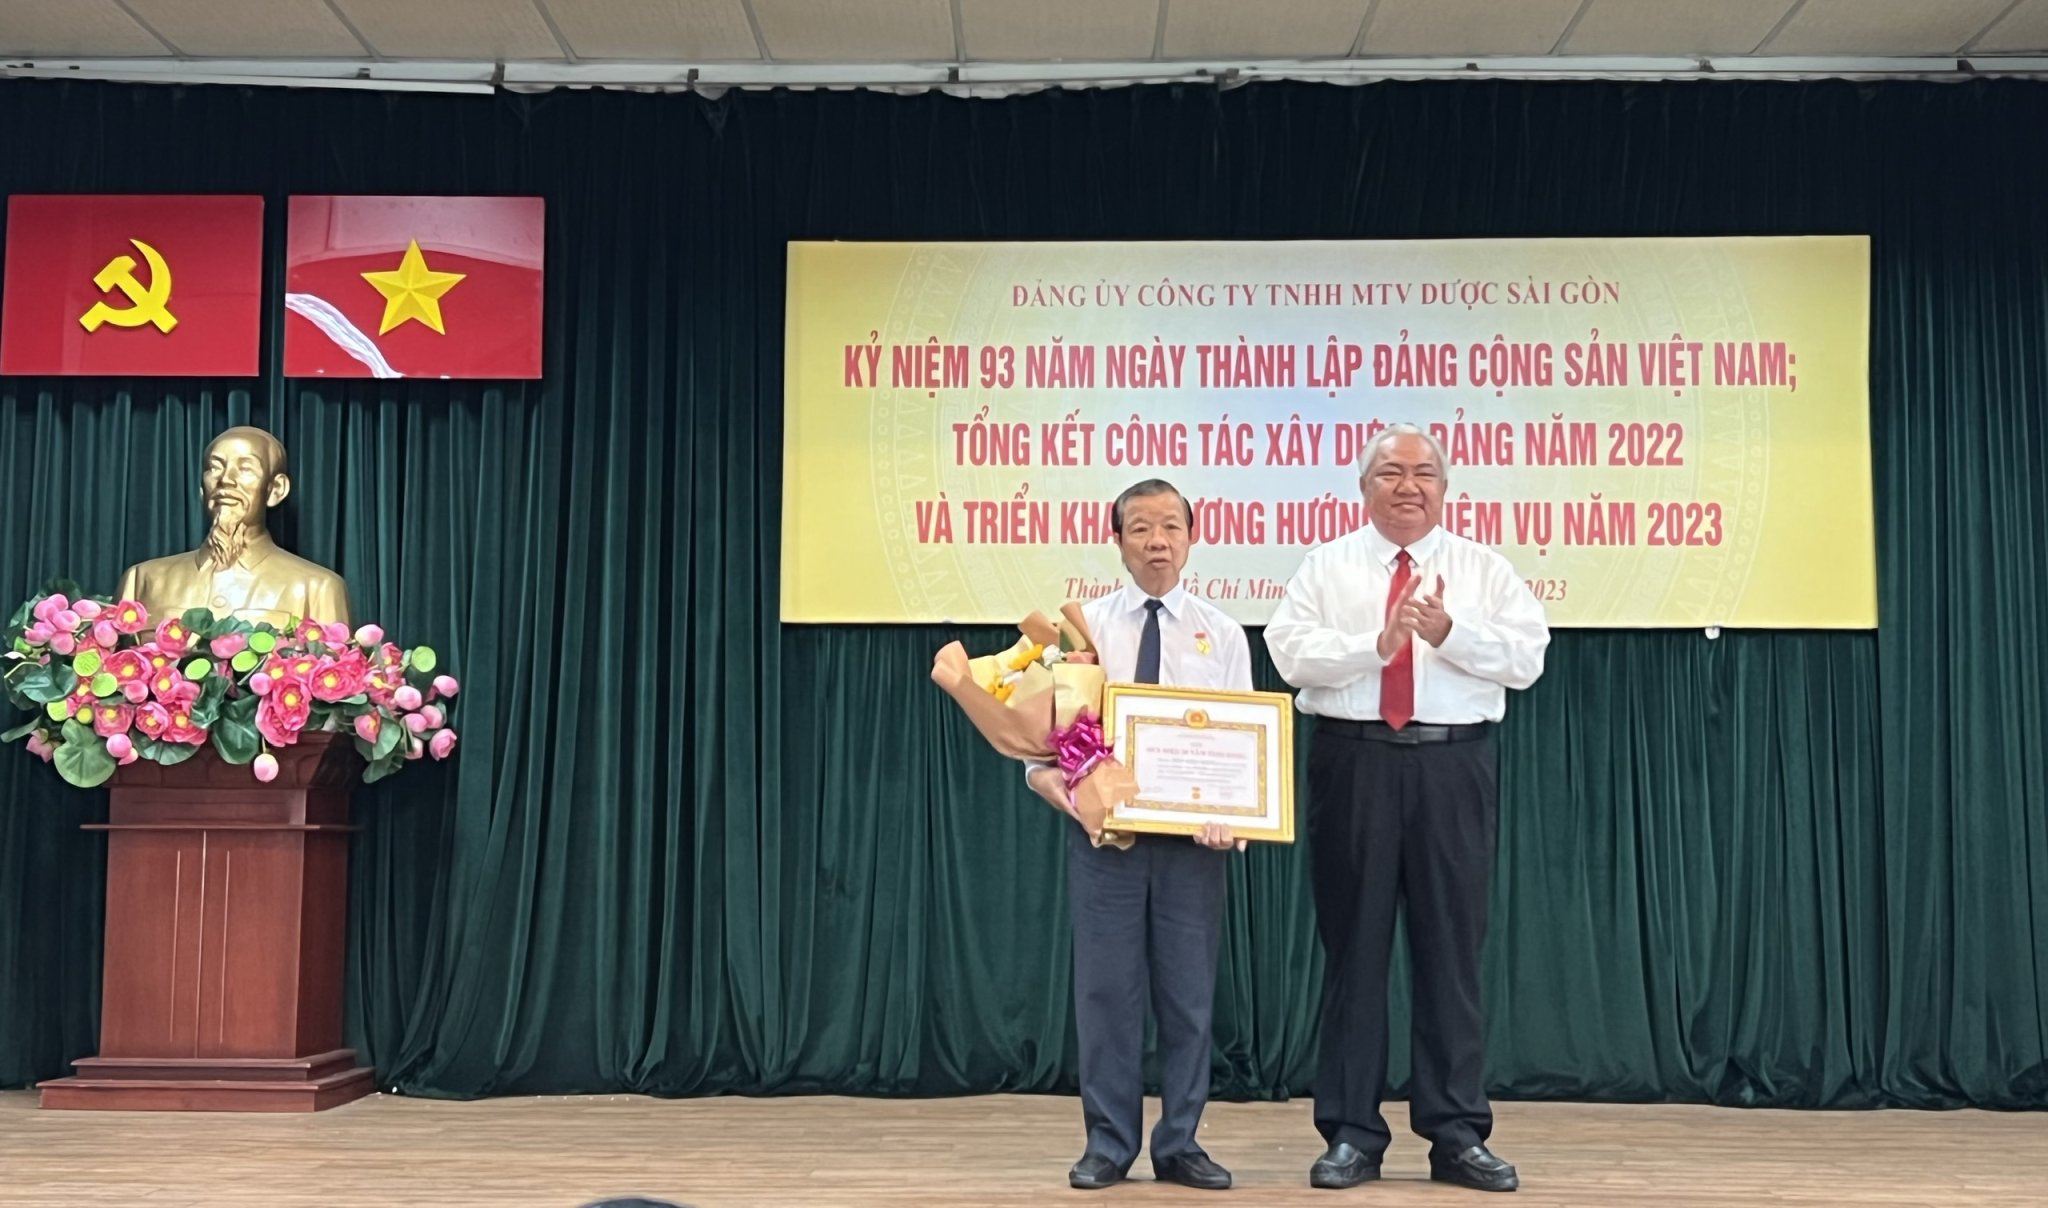 Sapharco tổ chức Lễ kỷ niệm 93 năm Ngày thành lập Đảng Cộng sản Việt Nam, trao tặng Huy hiệu Đảng, tổng kết công tác xây dựng Đảng năm 2022, triển khai phương hướng và nhiệm vụ năm 2023